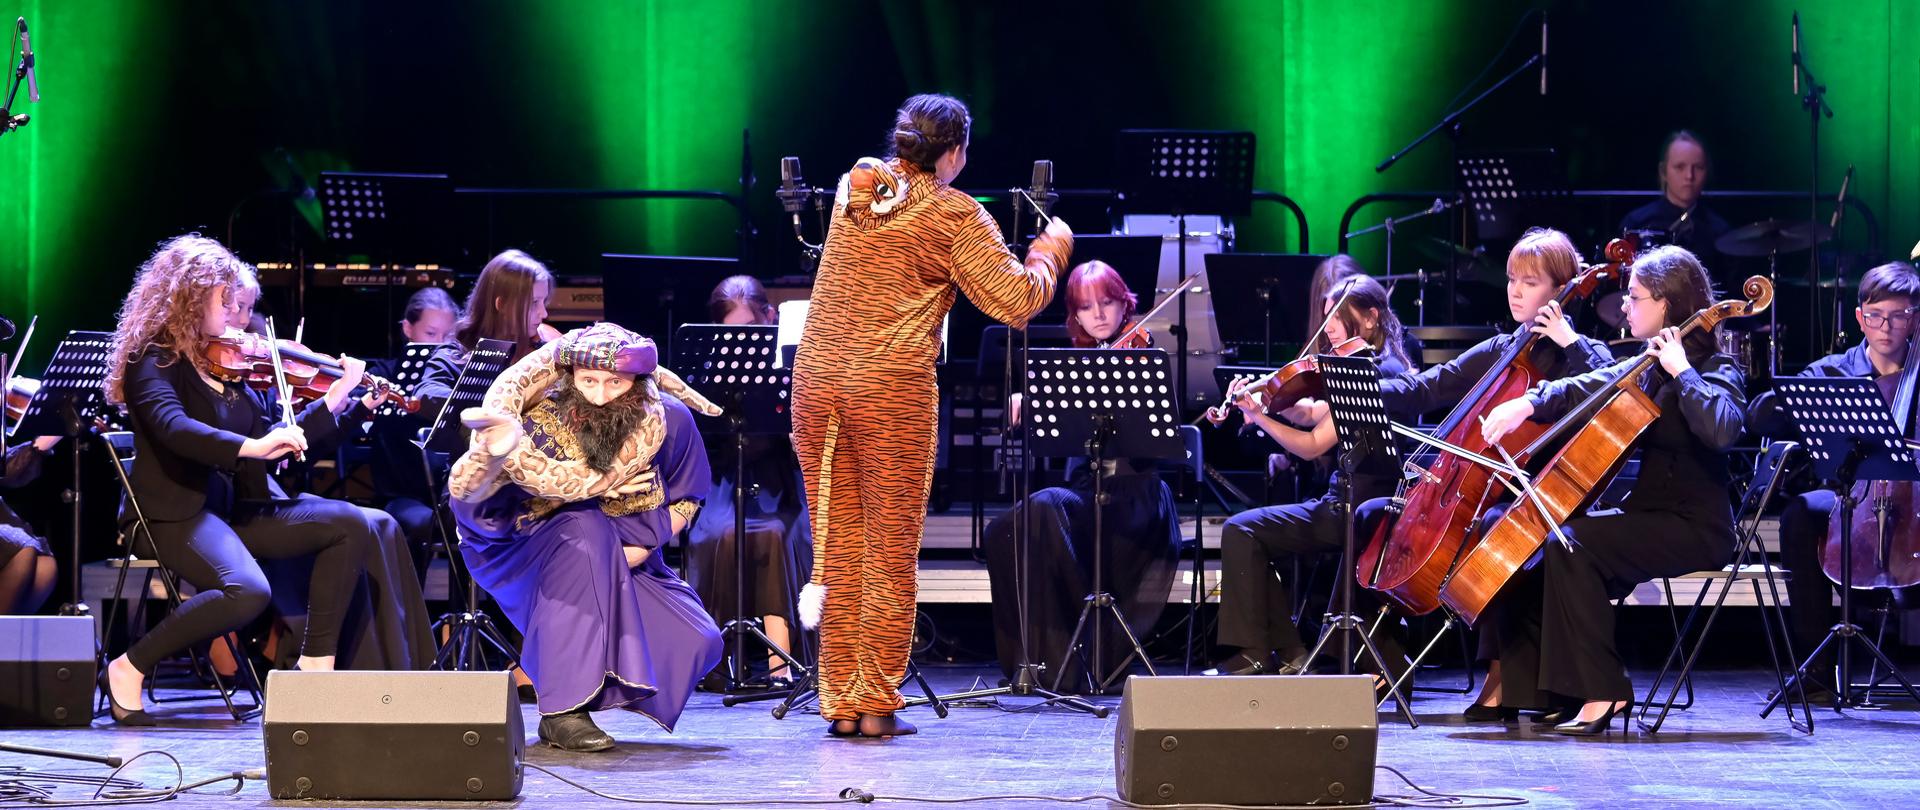 Kobieta dyryguje przebrana w strój tygrysa, obok po lewej stronie kuca mężczyzna w płaszczu trzymający meteriałowego węża, za nimi gra orkiestra.